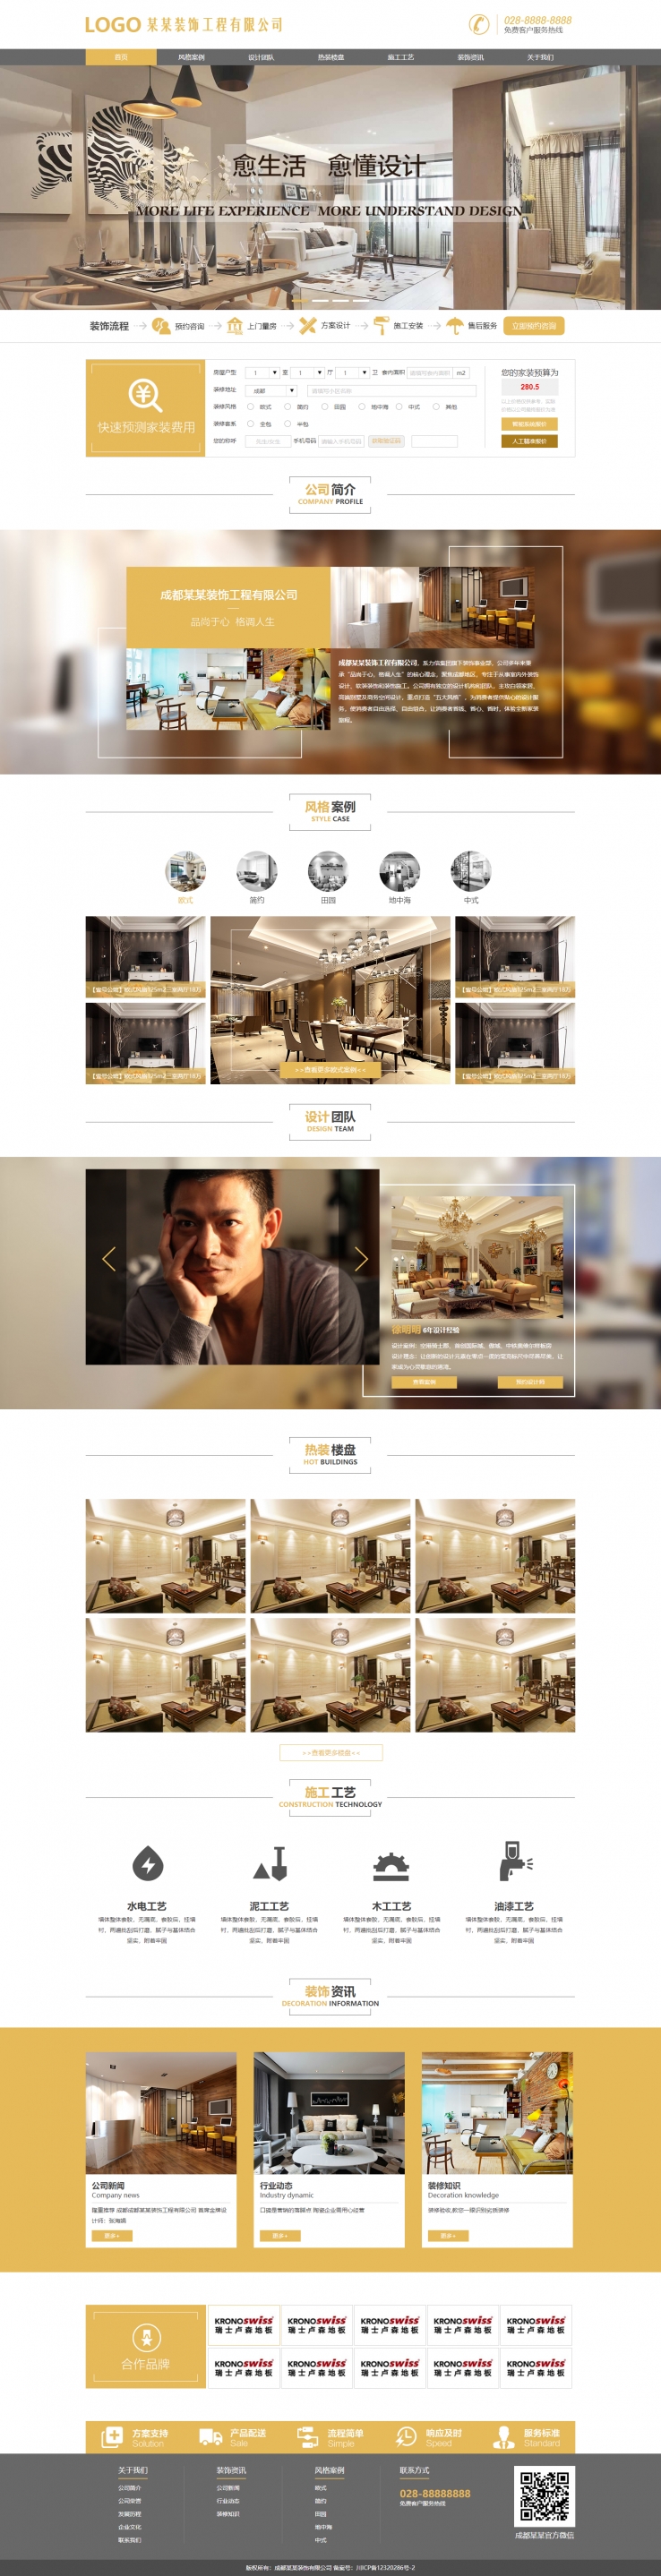 黄色扁平风格的室内装饰公司企业网站源码下载